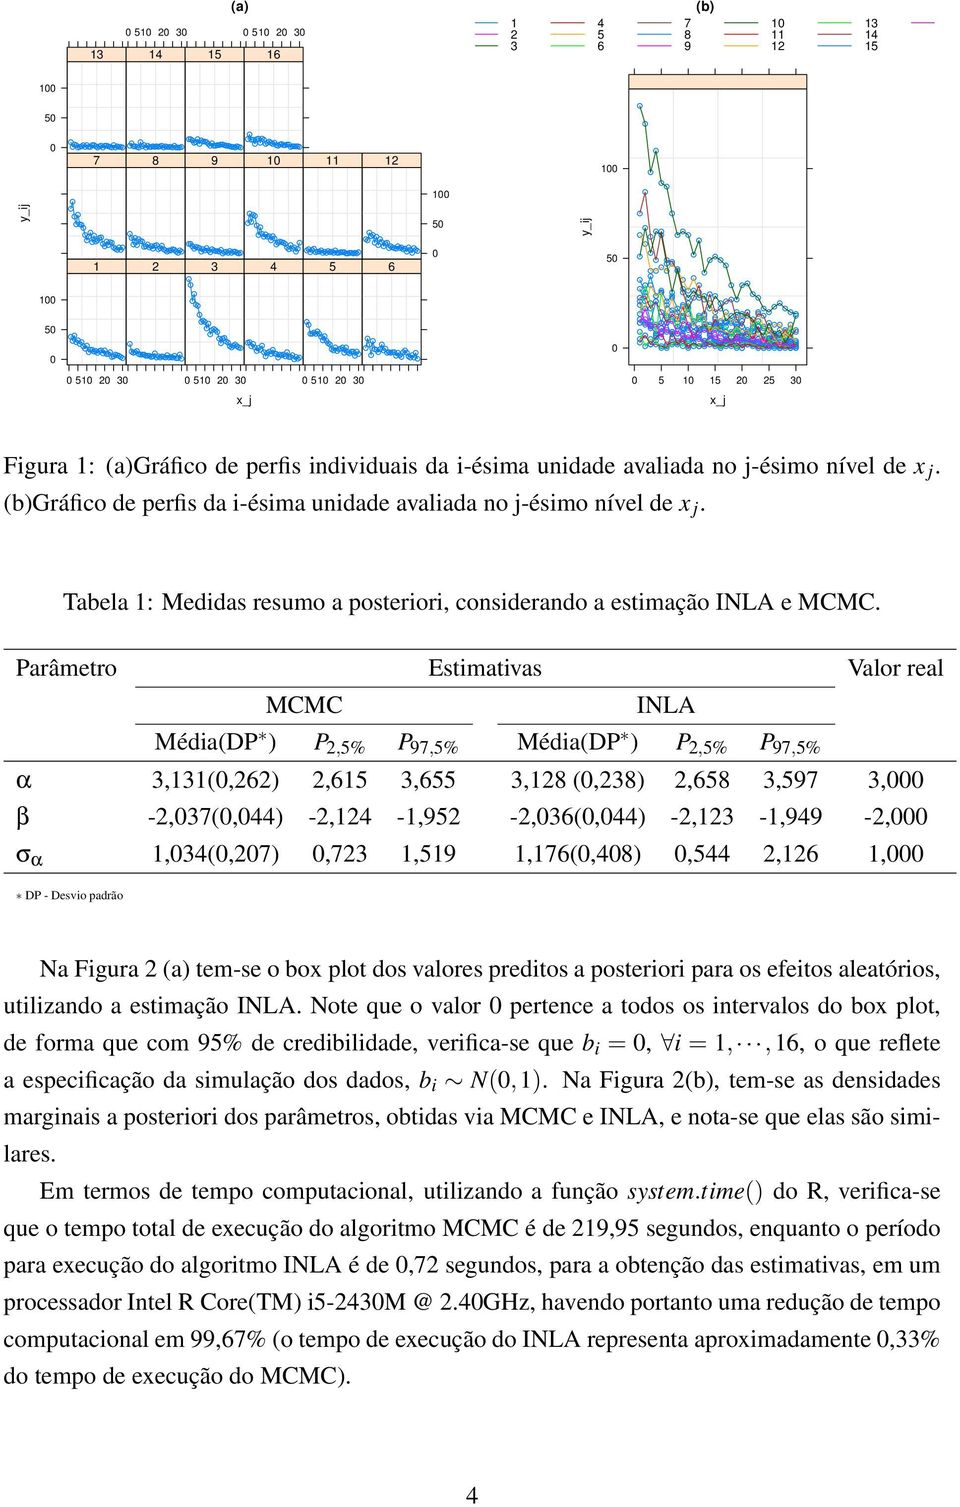 Tabela 1: Medidas resumo a posteriori, considerando a estimação INLA e MCMC.